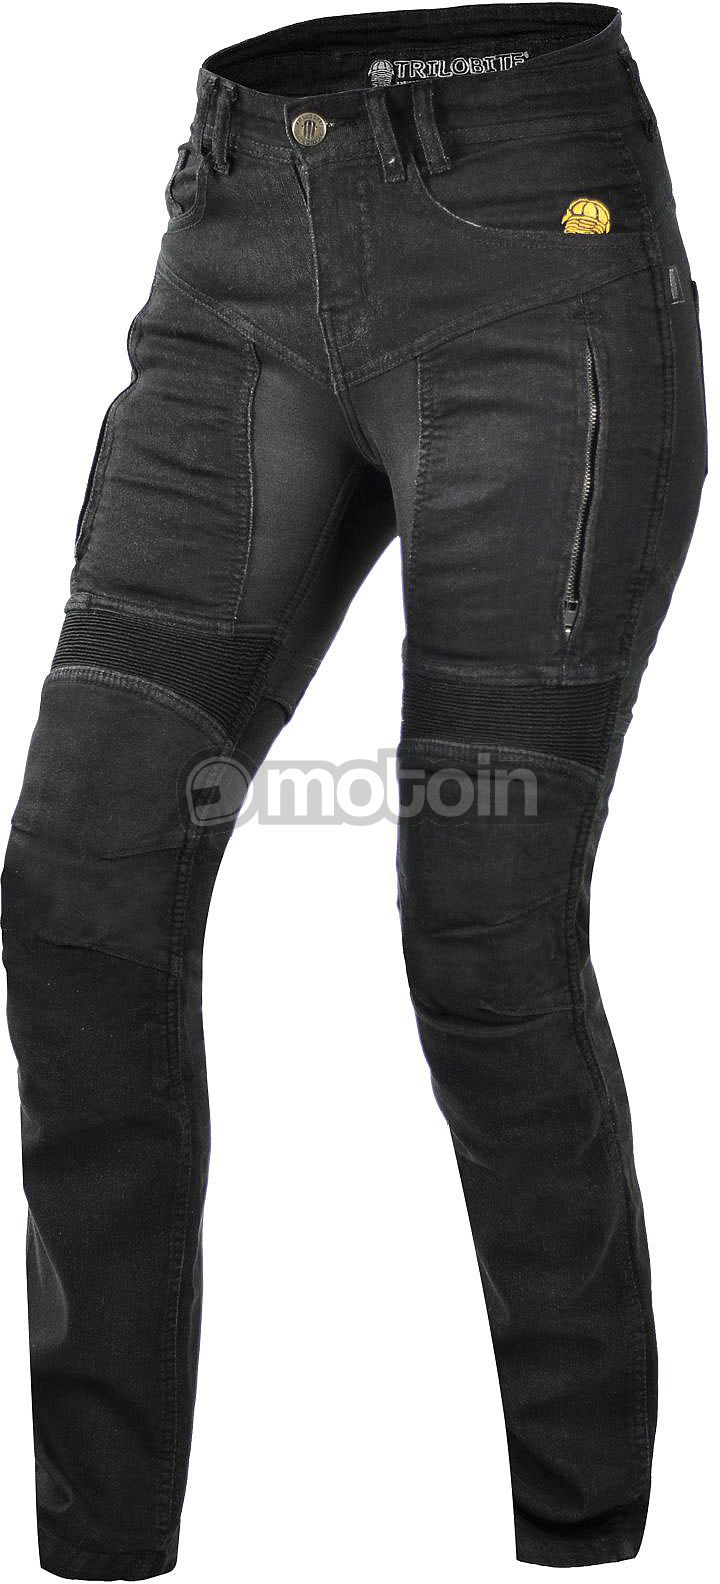 Trilobite Parado Slim-Fit, mulheres de calças de ganga